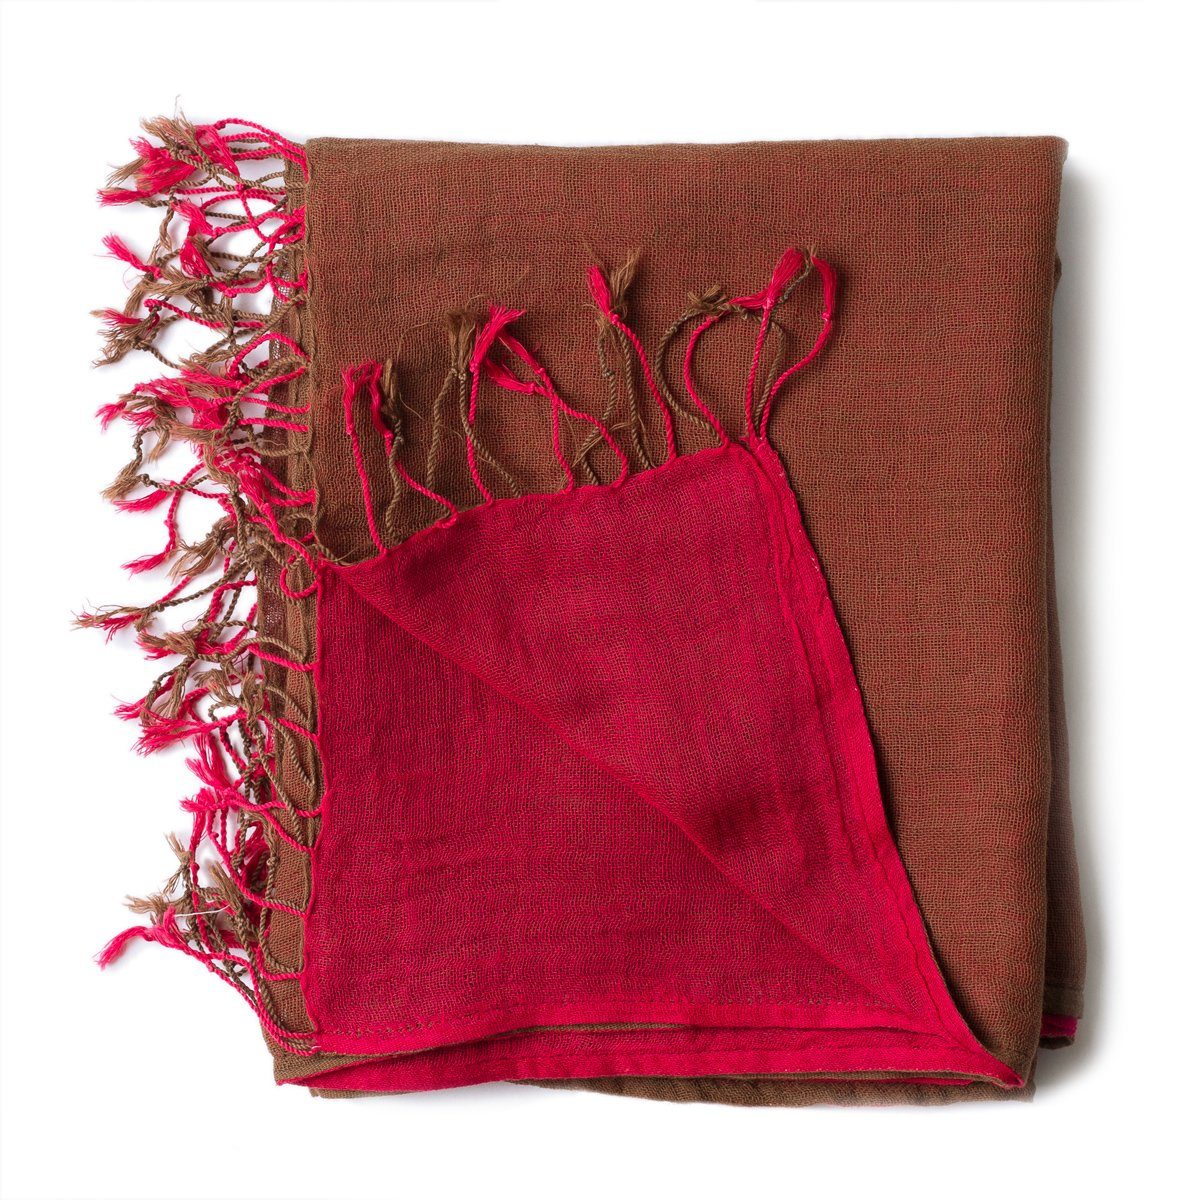 PANASIAM Halstuch elegantes Schultertuch zweifarbig Fransen oder aus kleinen als braun in tragbar, Baumwolle rot Schal mit schönen Designs Stola farbigen auch